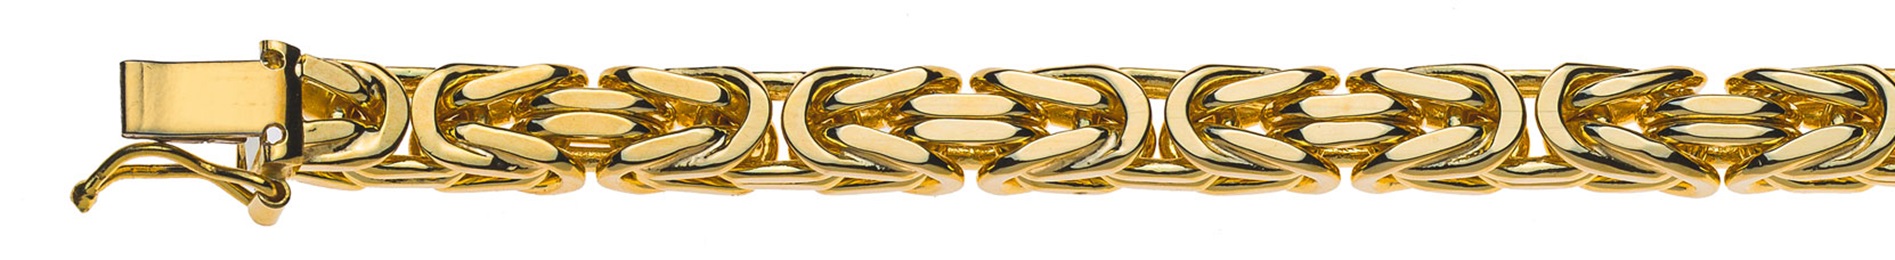 AURONOS Prestige Halskette Gelbgold 18K Königskette 50cm 5mm